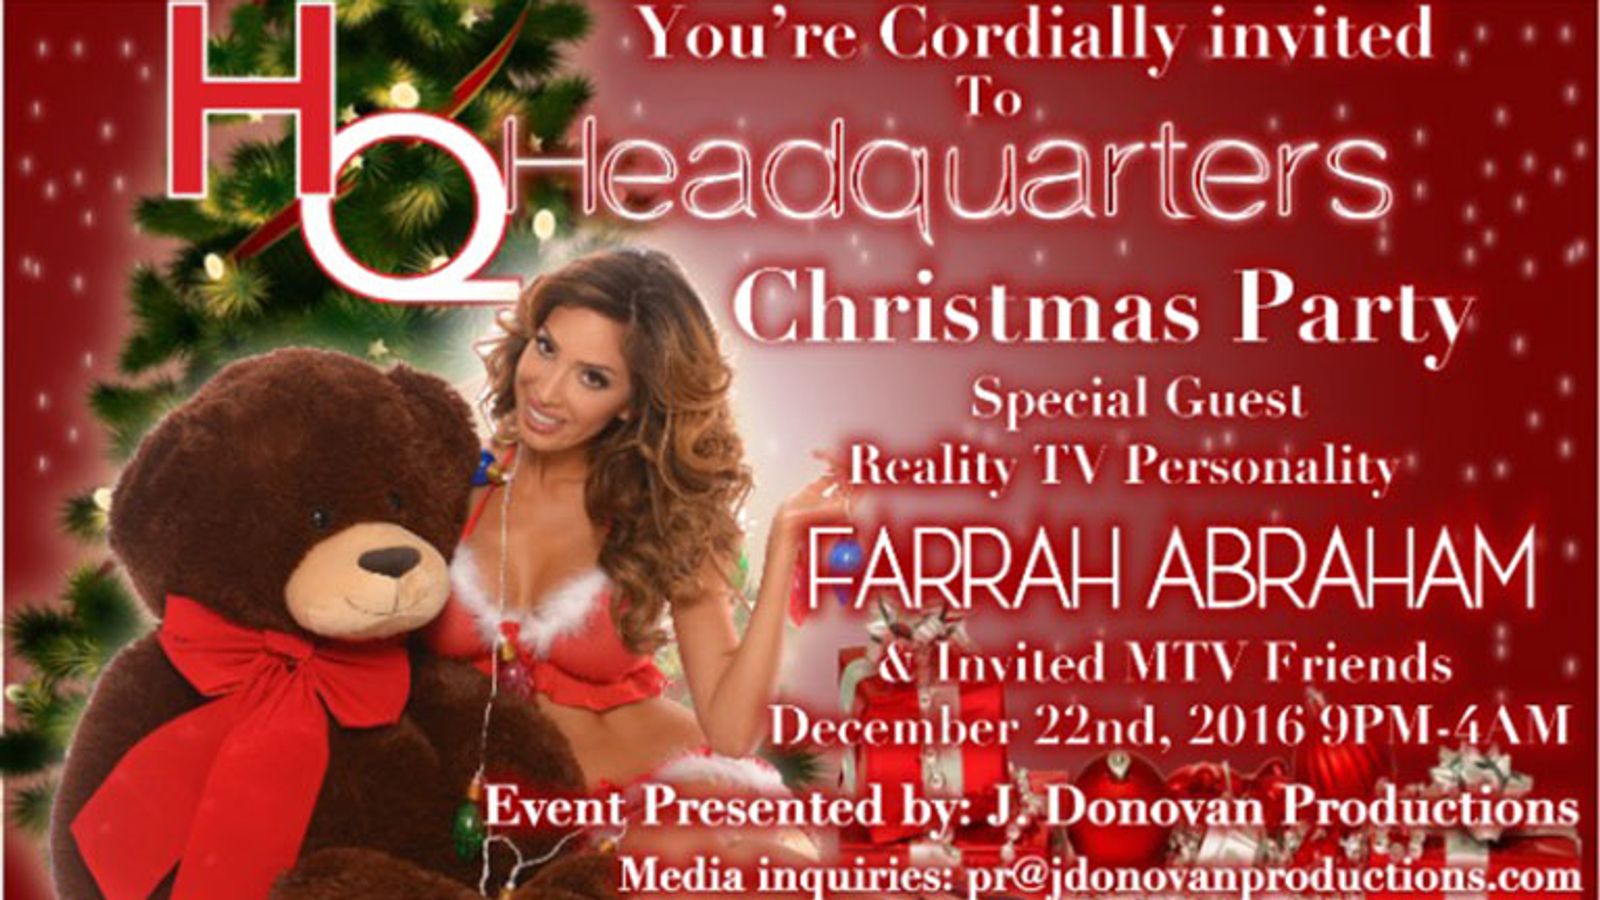 Farrah Abraham to Appear at Headquarters NY Xmas Party Dec. 22